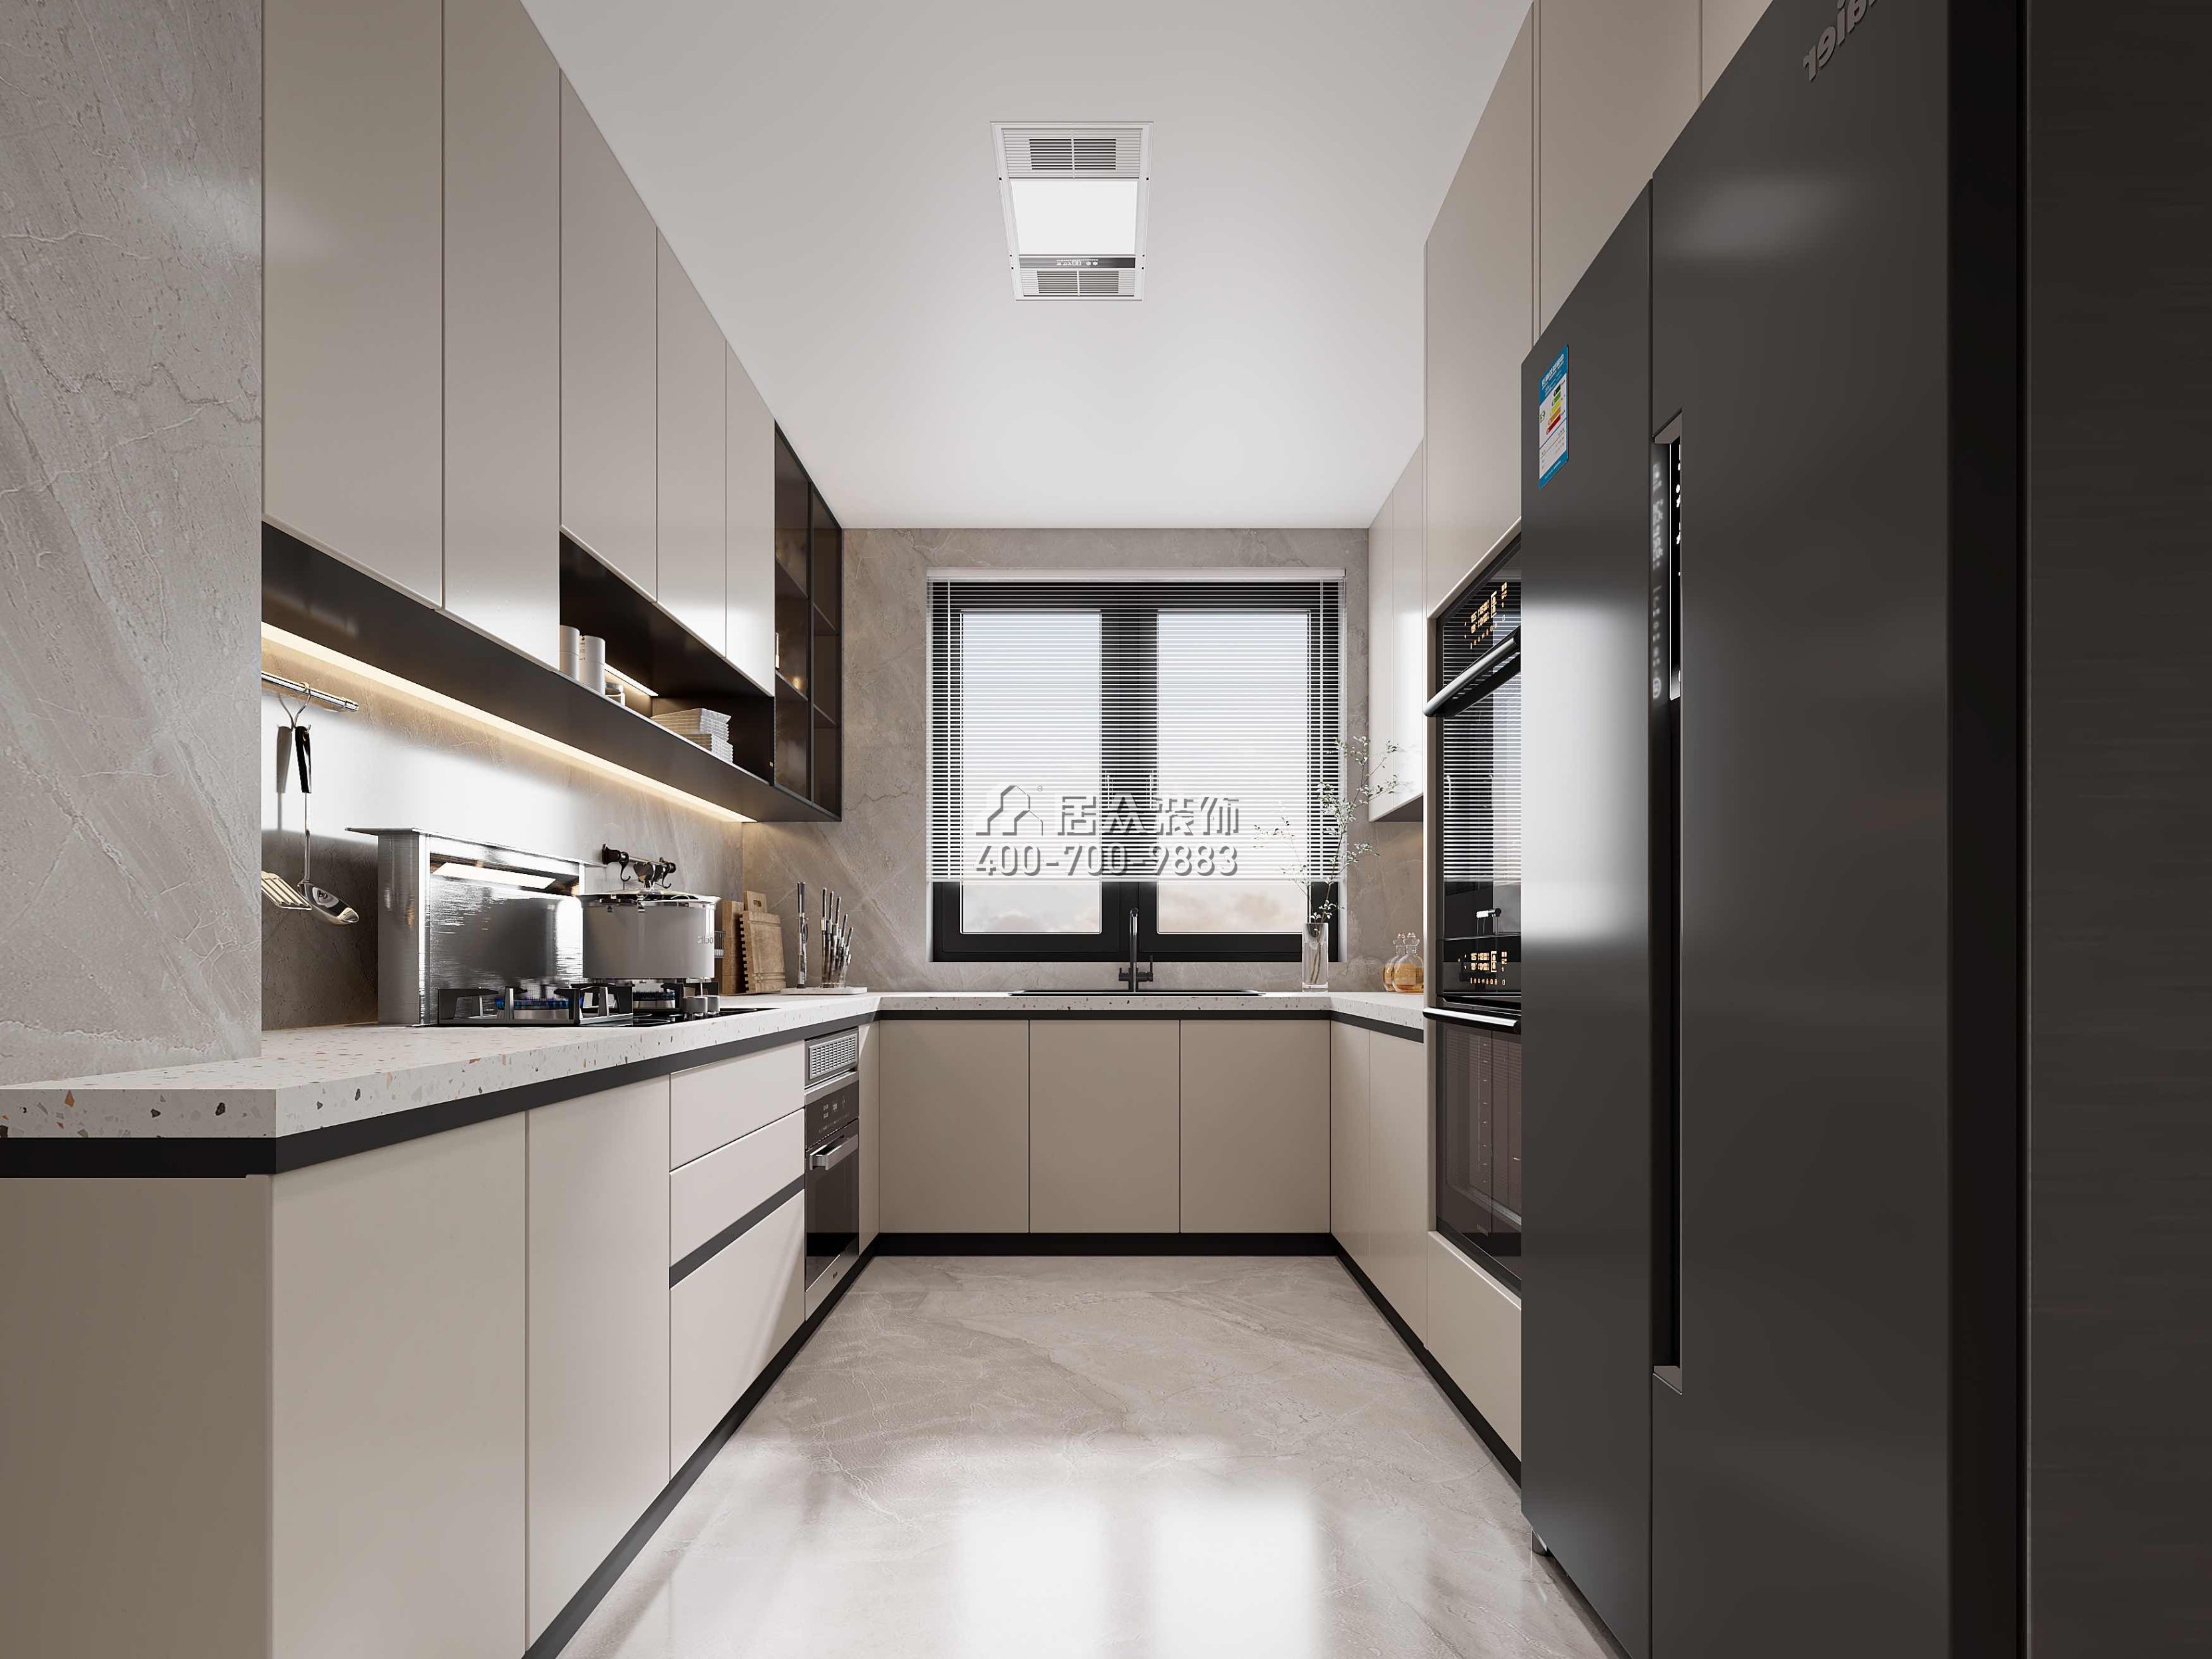 汇城茗院120平方米现代简约风格平层户型厨房装修效果图